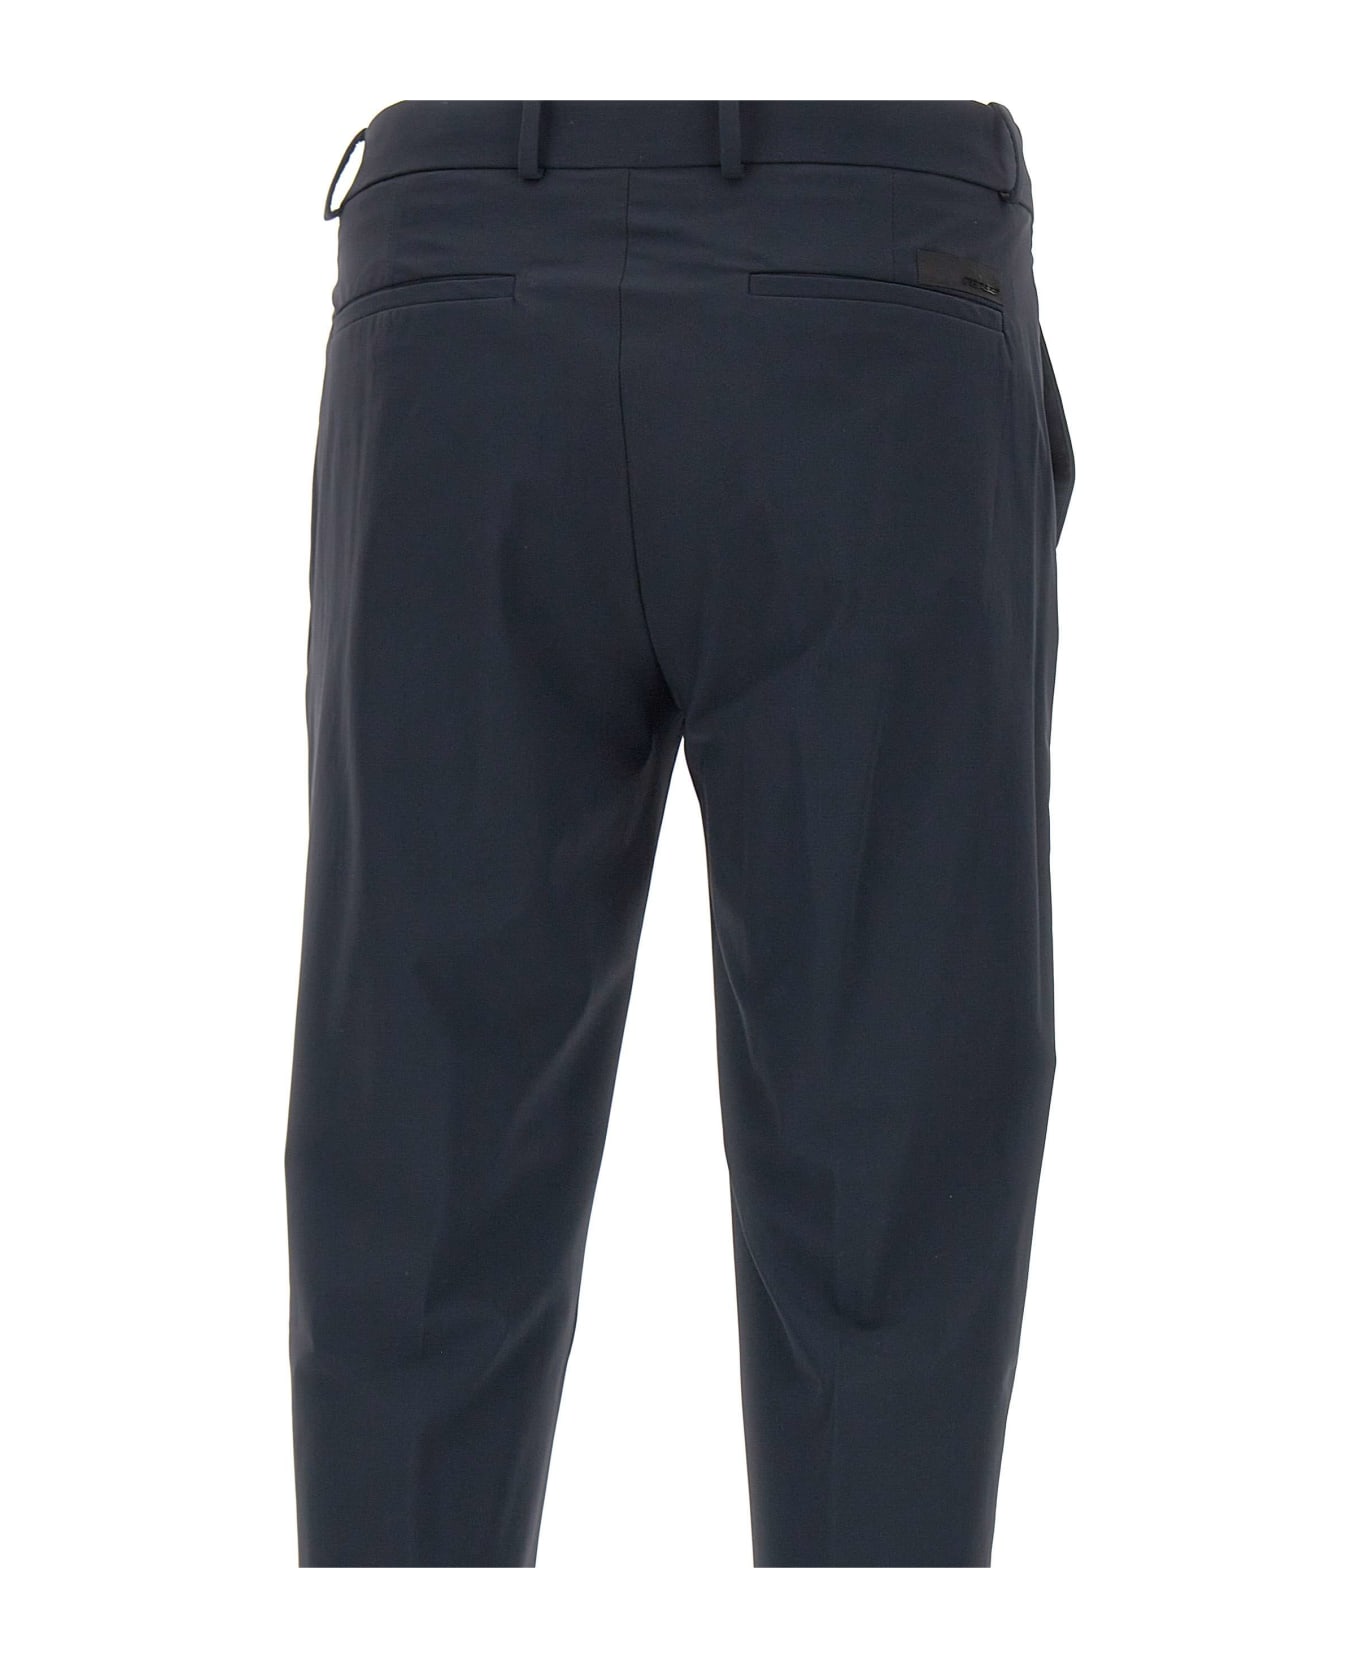 RRD - Roberto Ricci Design Men's Trousers "revo Chino" - BLUE